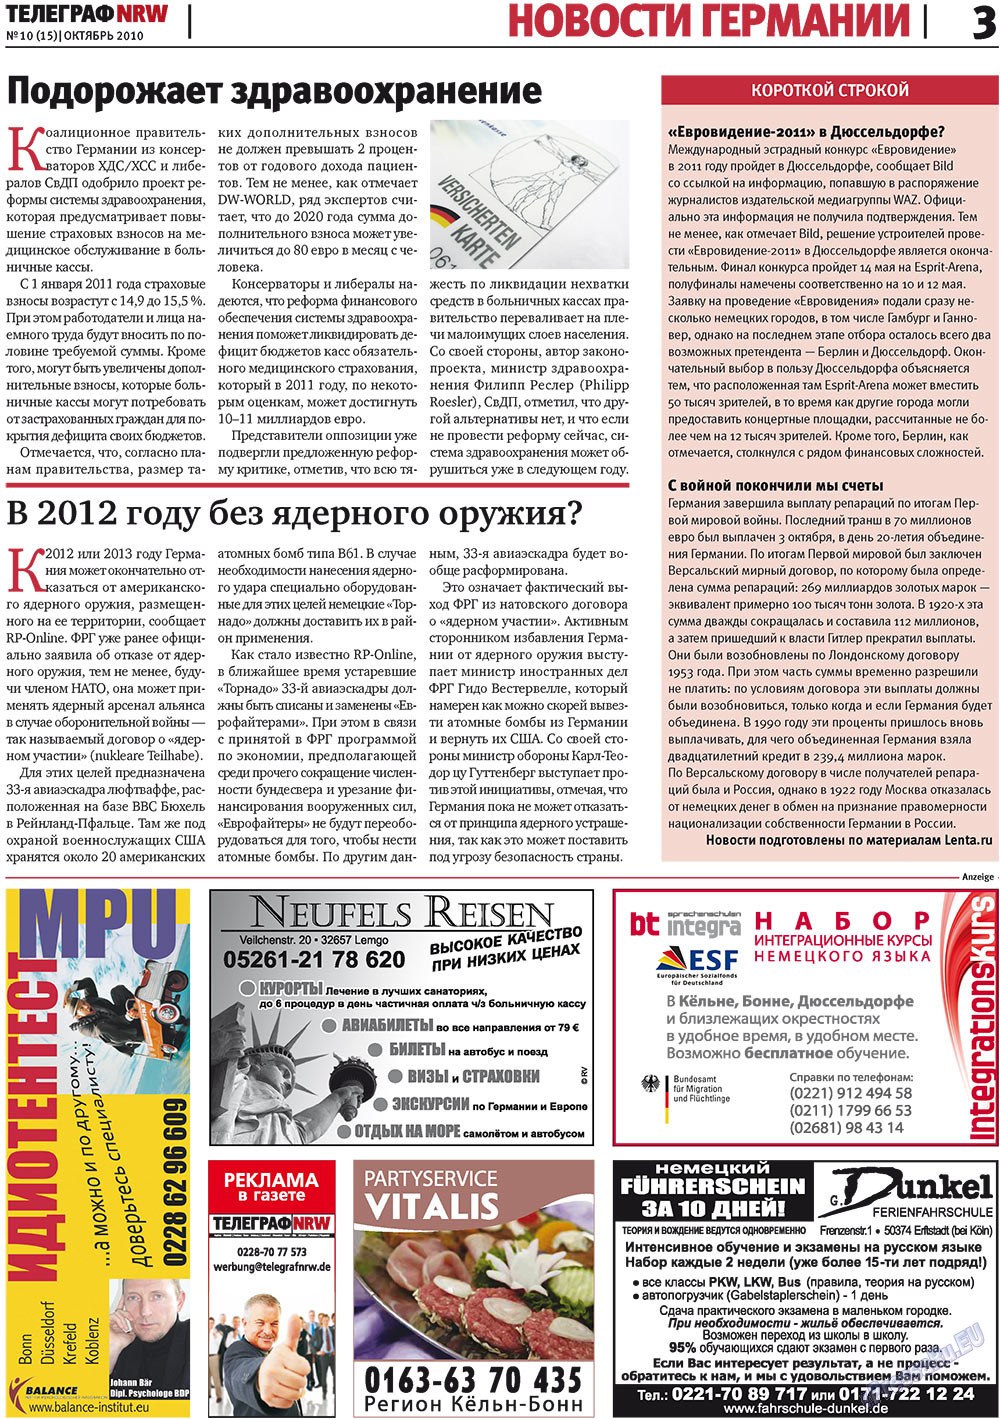 Телеграф NRW (газета). 2010 год, номер 10, стр. 3